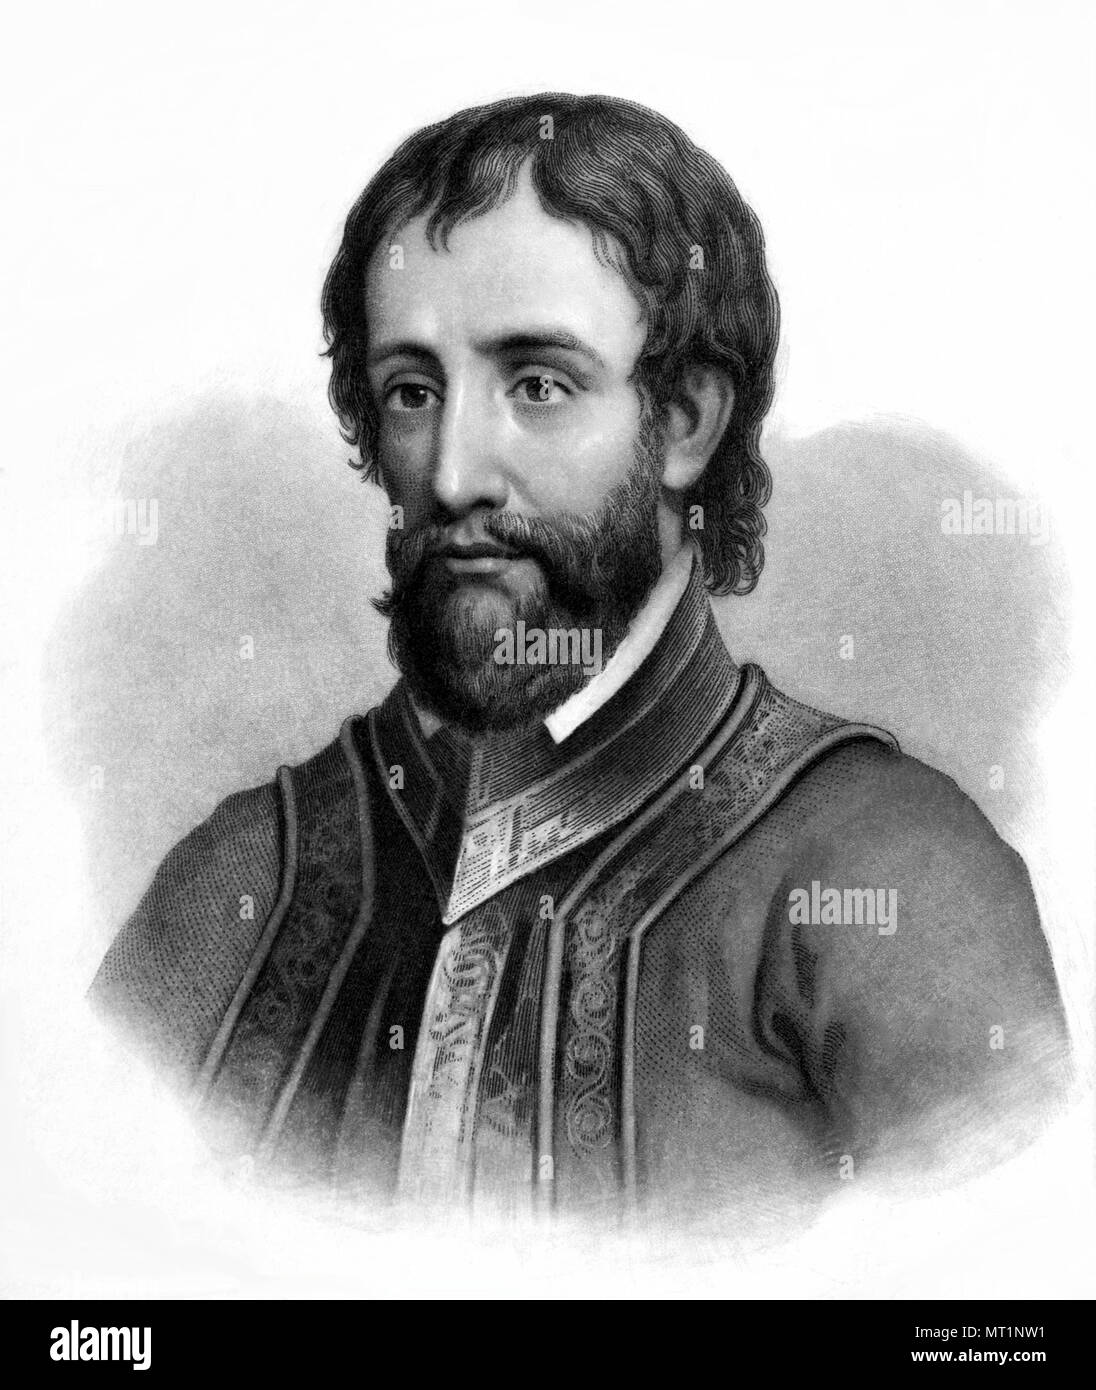 Hernando de Soto (1495 - 1542) l'explorateur espagnol Banque D'Images